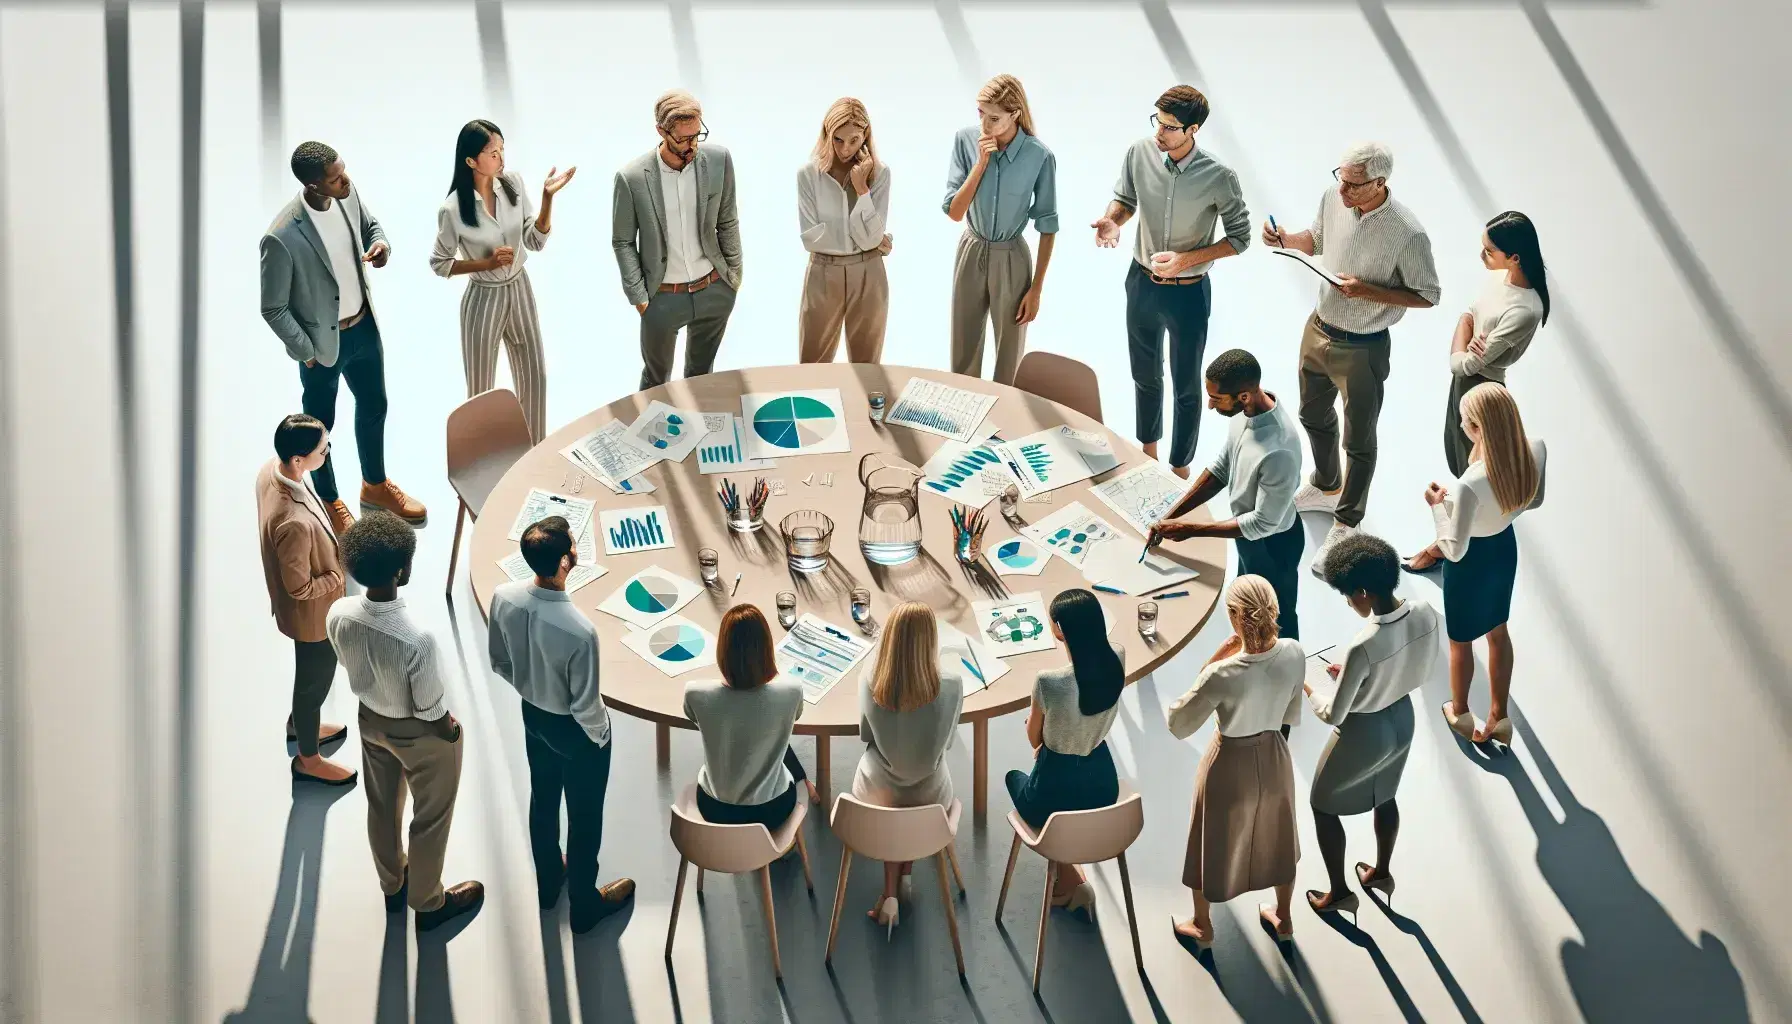 Grupo diverso de profesionales en reunión de trabajo alrededor de una mesa redonda con papeles y una jarra de agua, en un ambiente de colaboración.